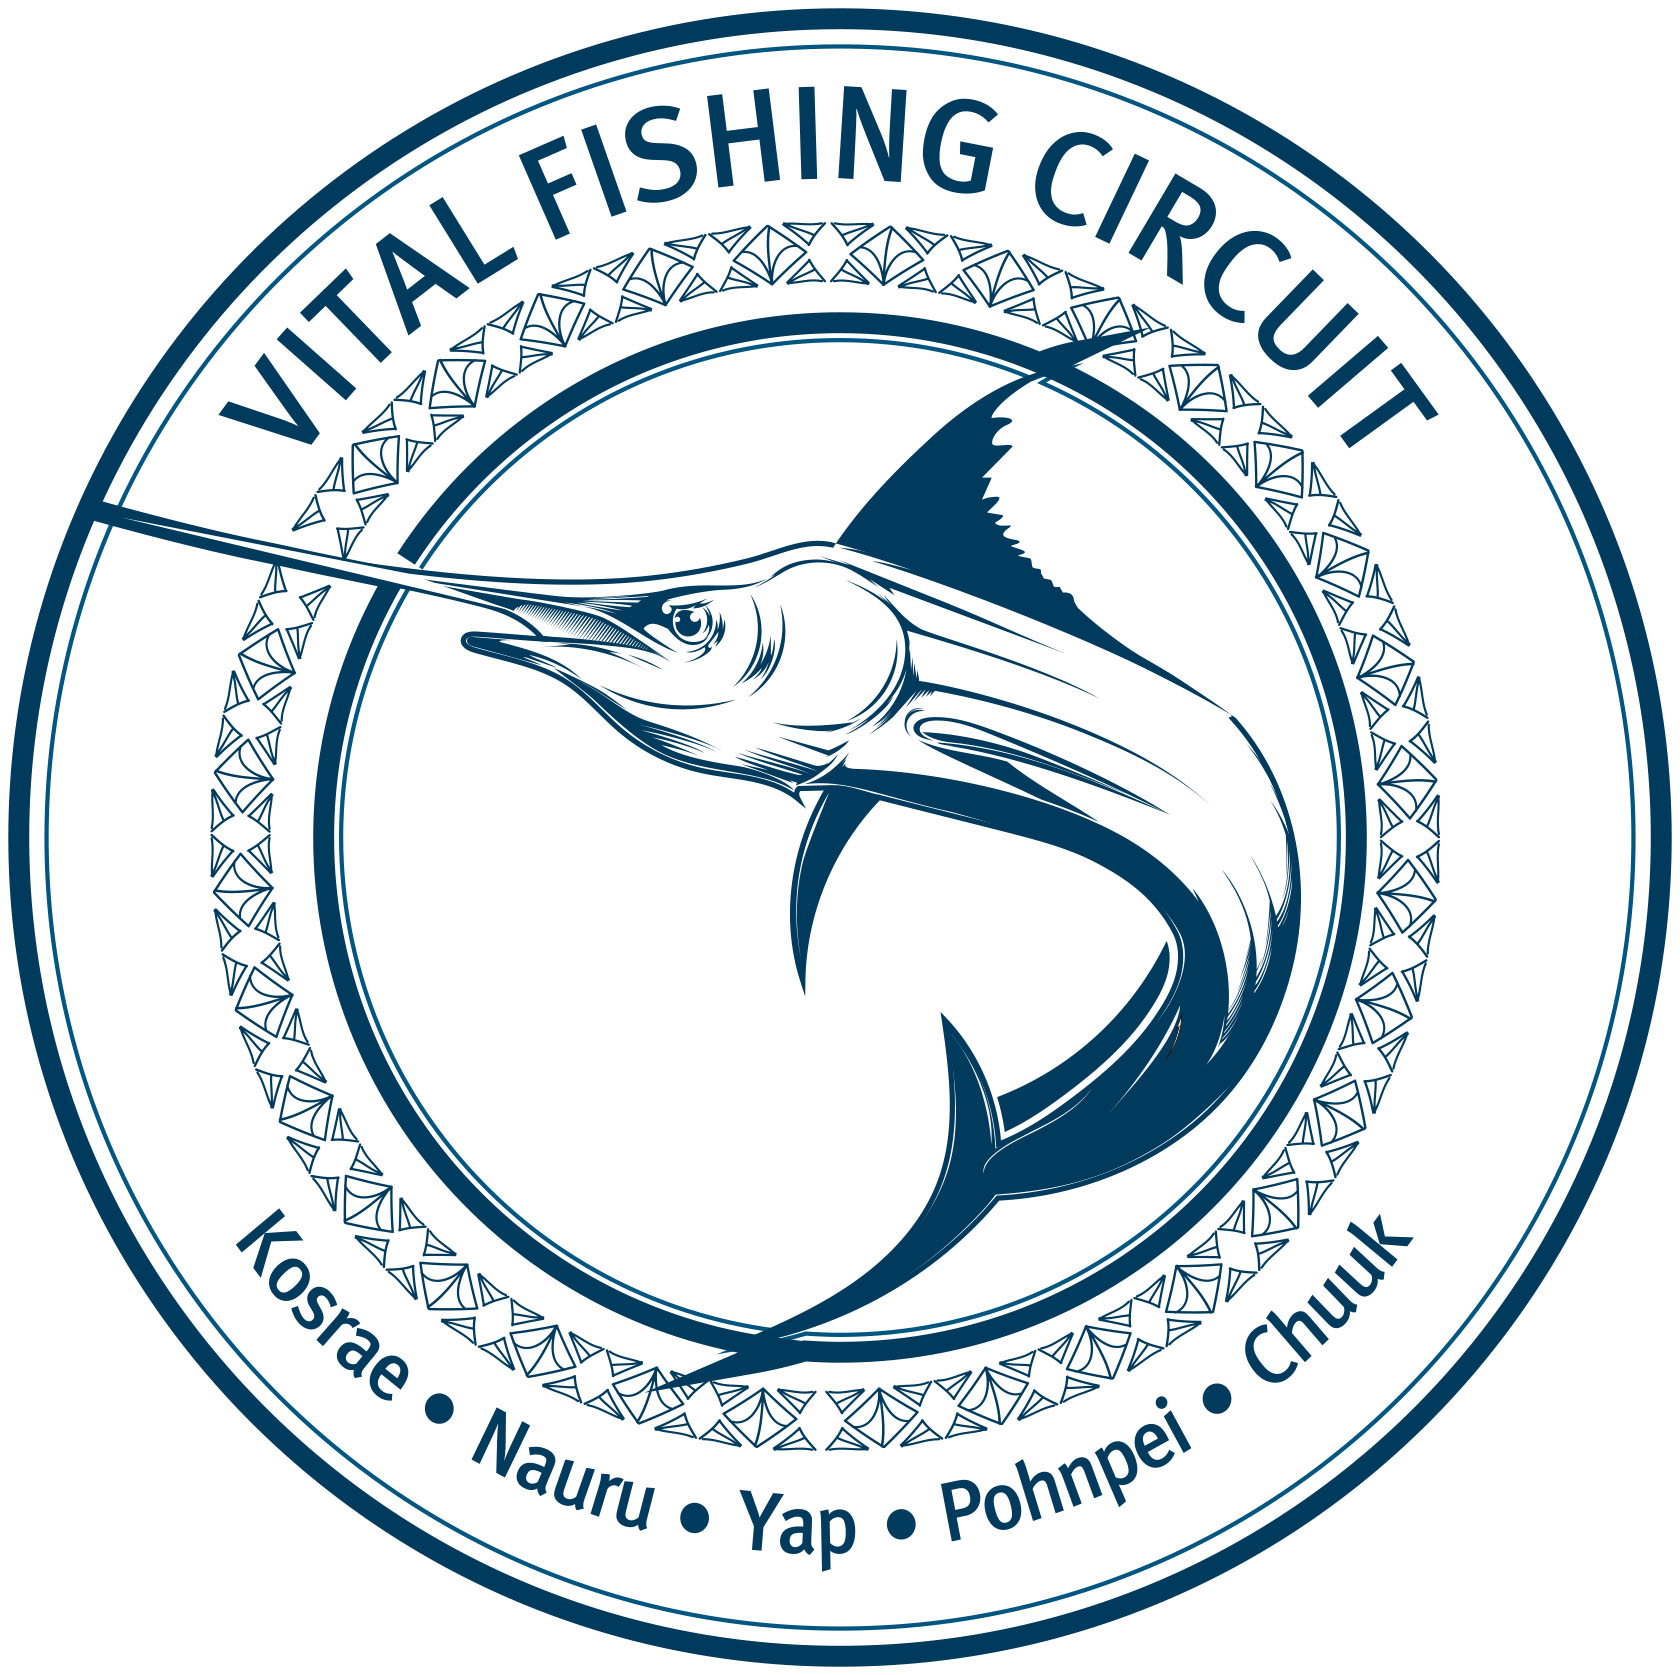 Vital Fishing Circuit Micronesia